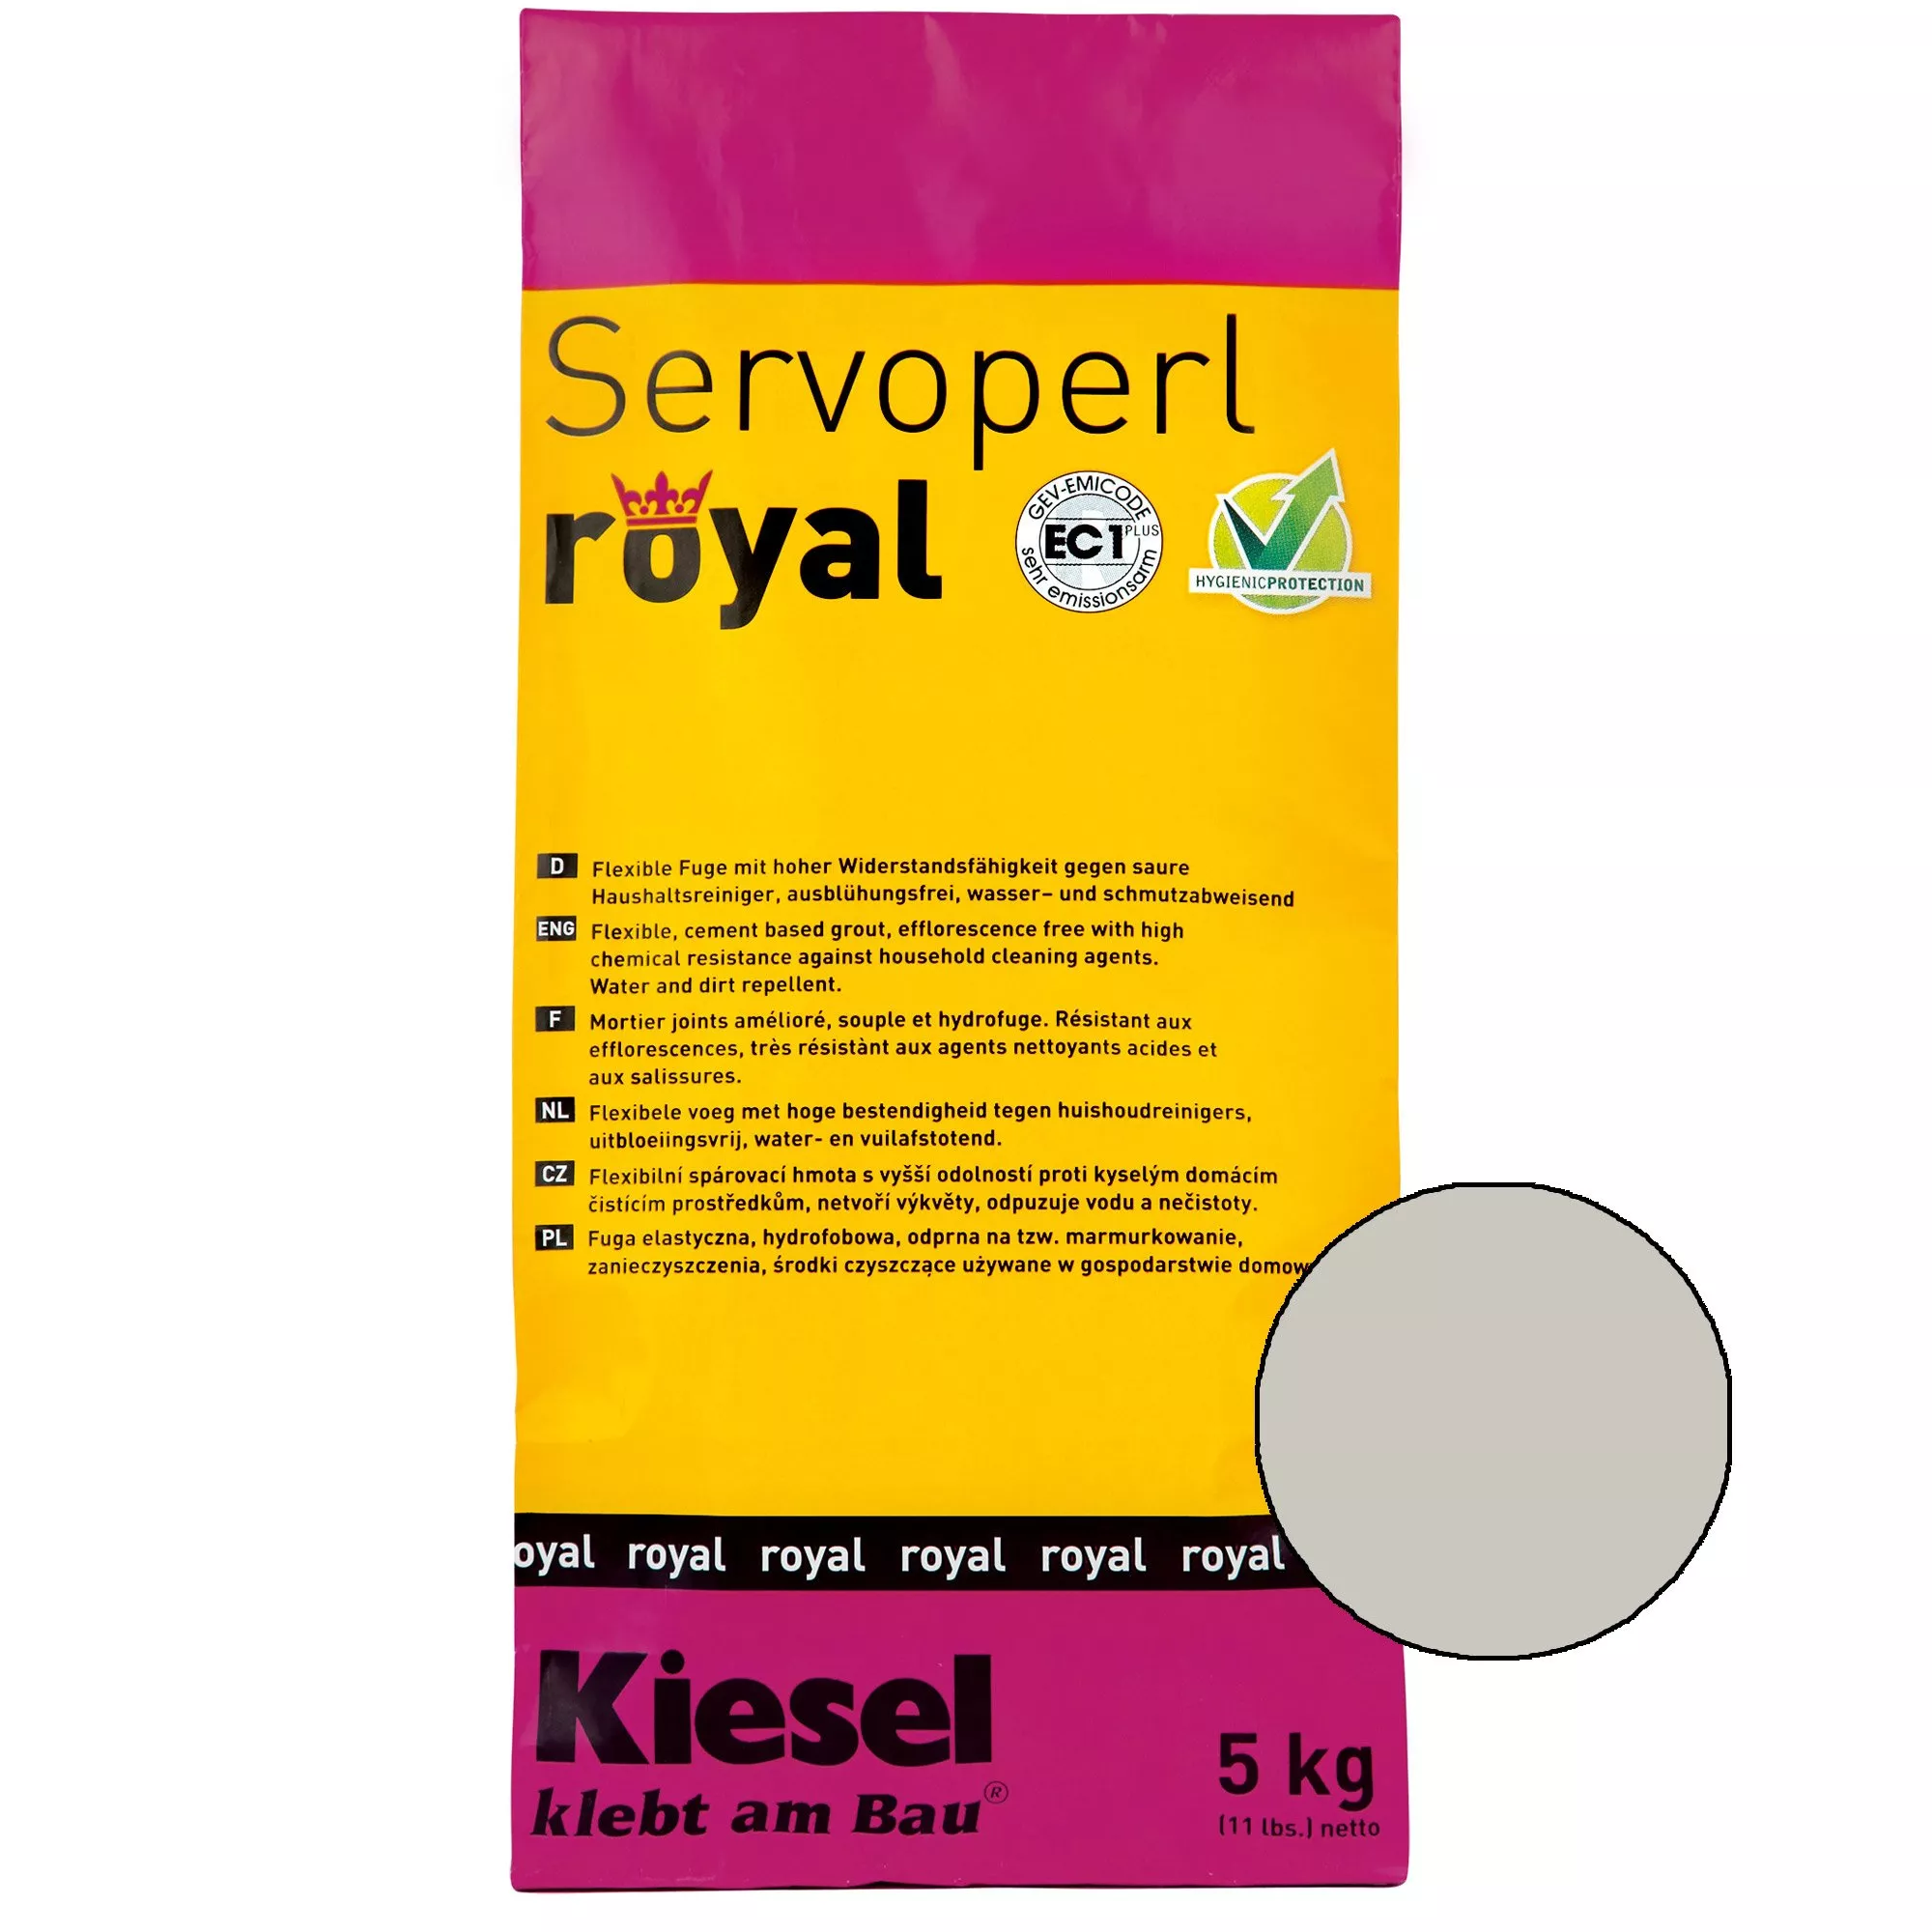 Kiesel Servoperl royal - fuga keverék - 5 kg ezüstszürke